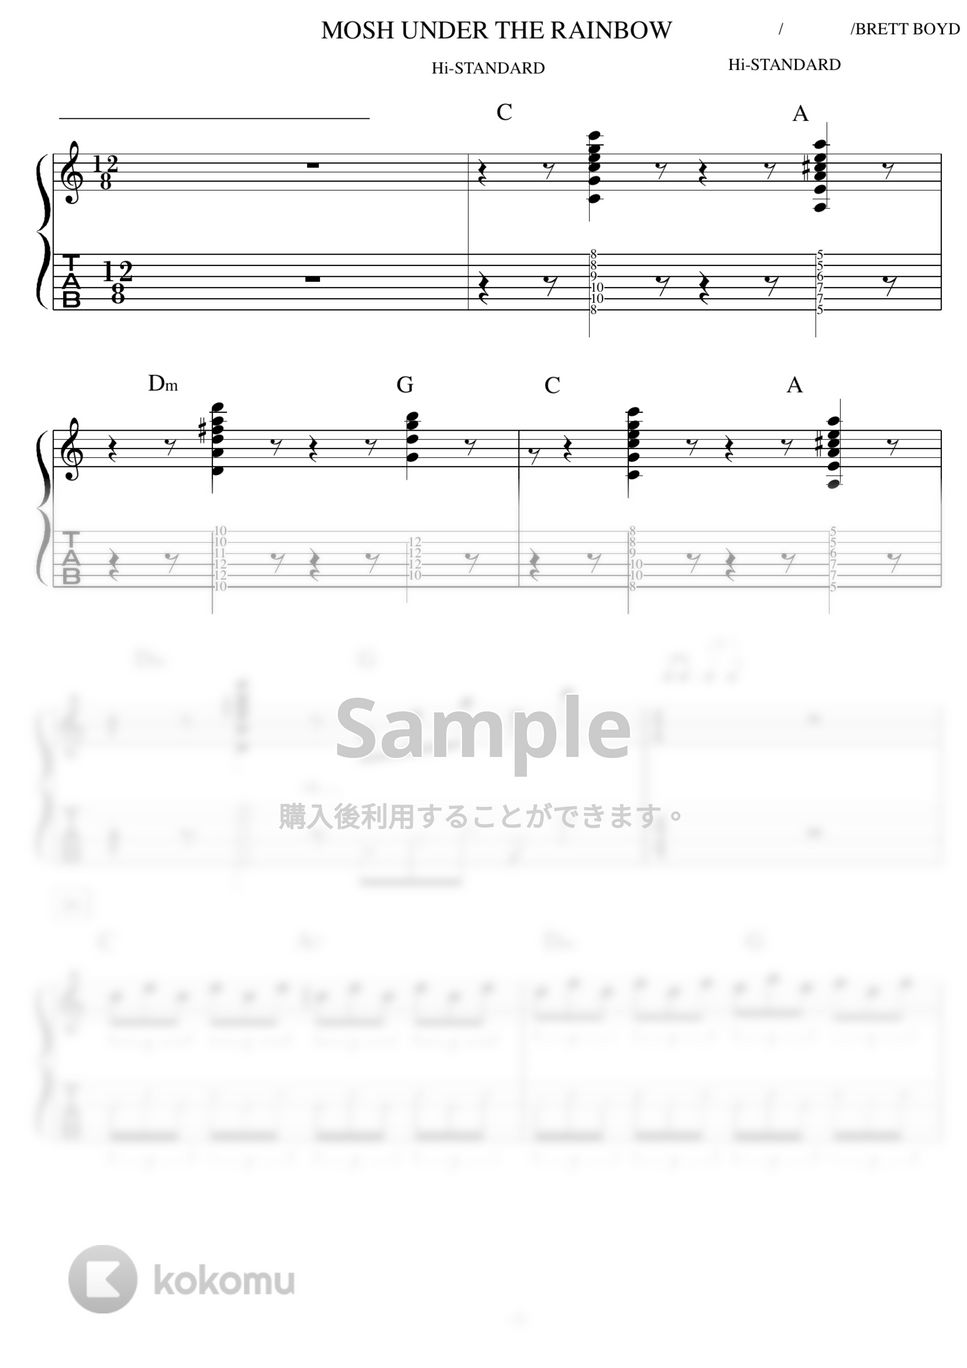 Hi-STANDARD - MOSH UNDER THE RAINBOW ギター演奏動画付TAB譜 by バイトーン音楽教室